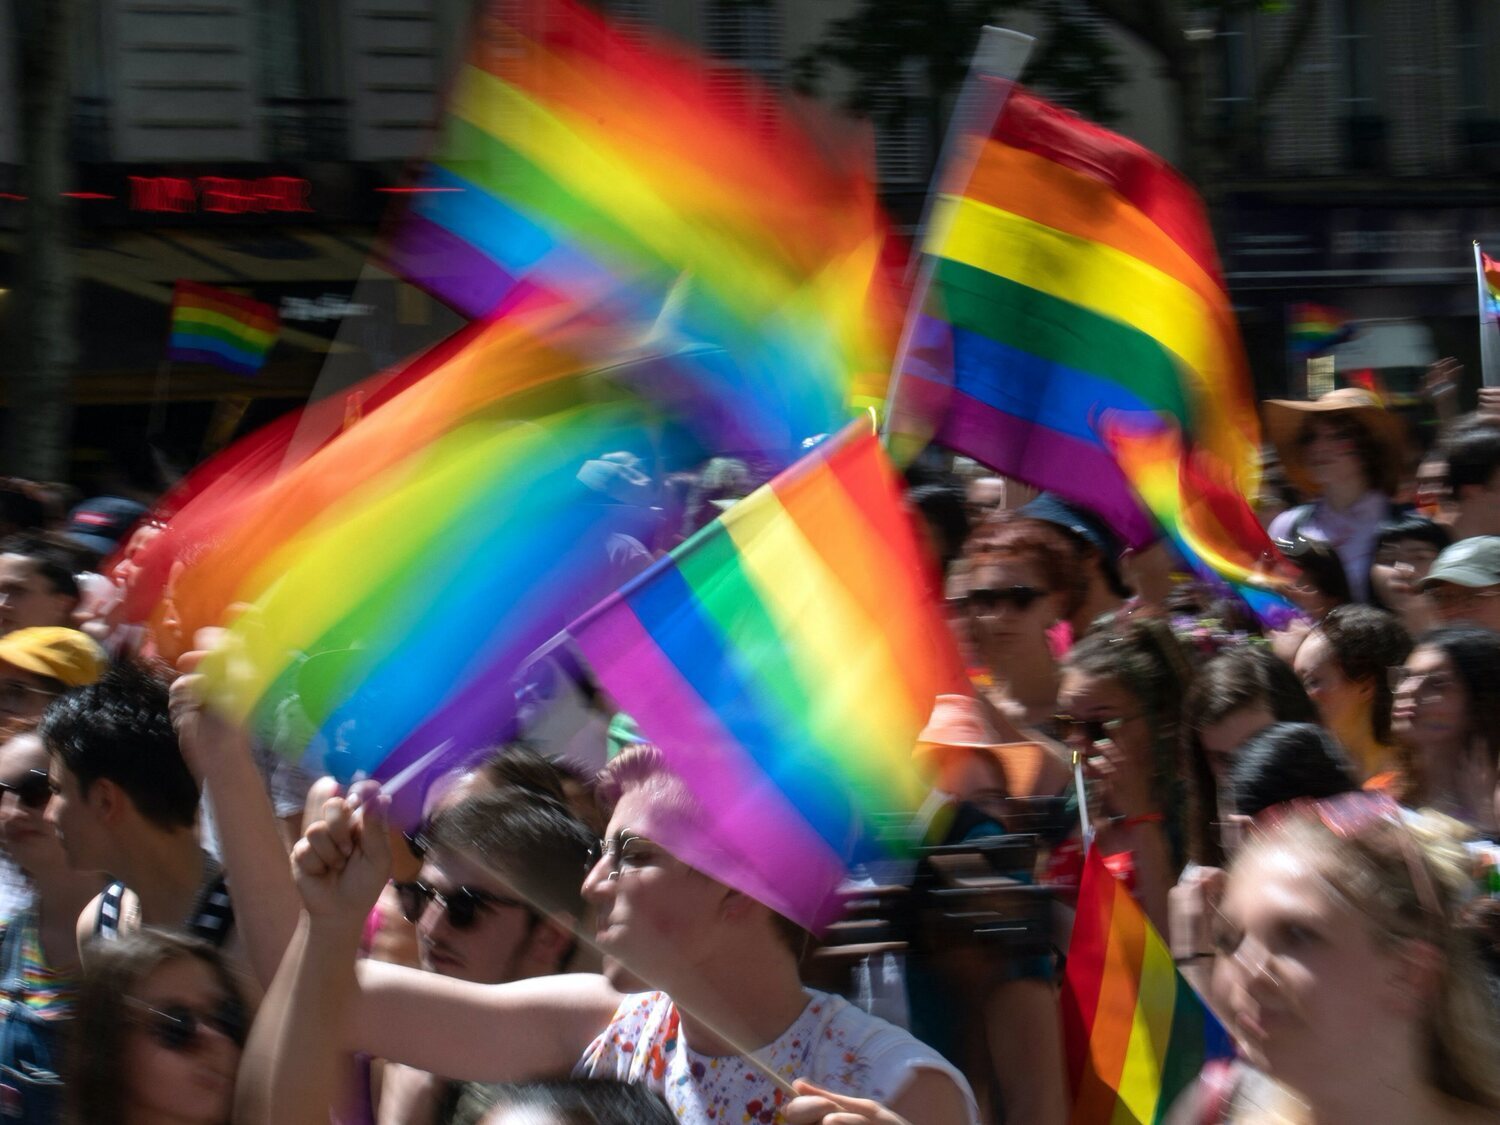 Francia castigará con penas de cárcel las "terapias" de conversión a personas LGTBI